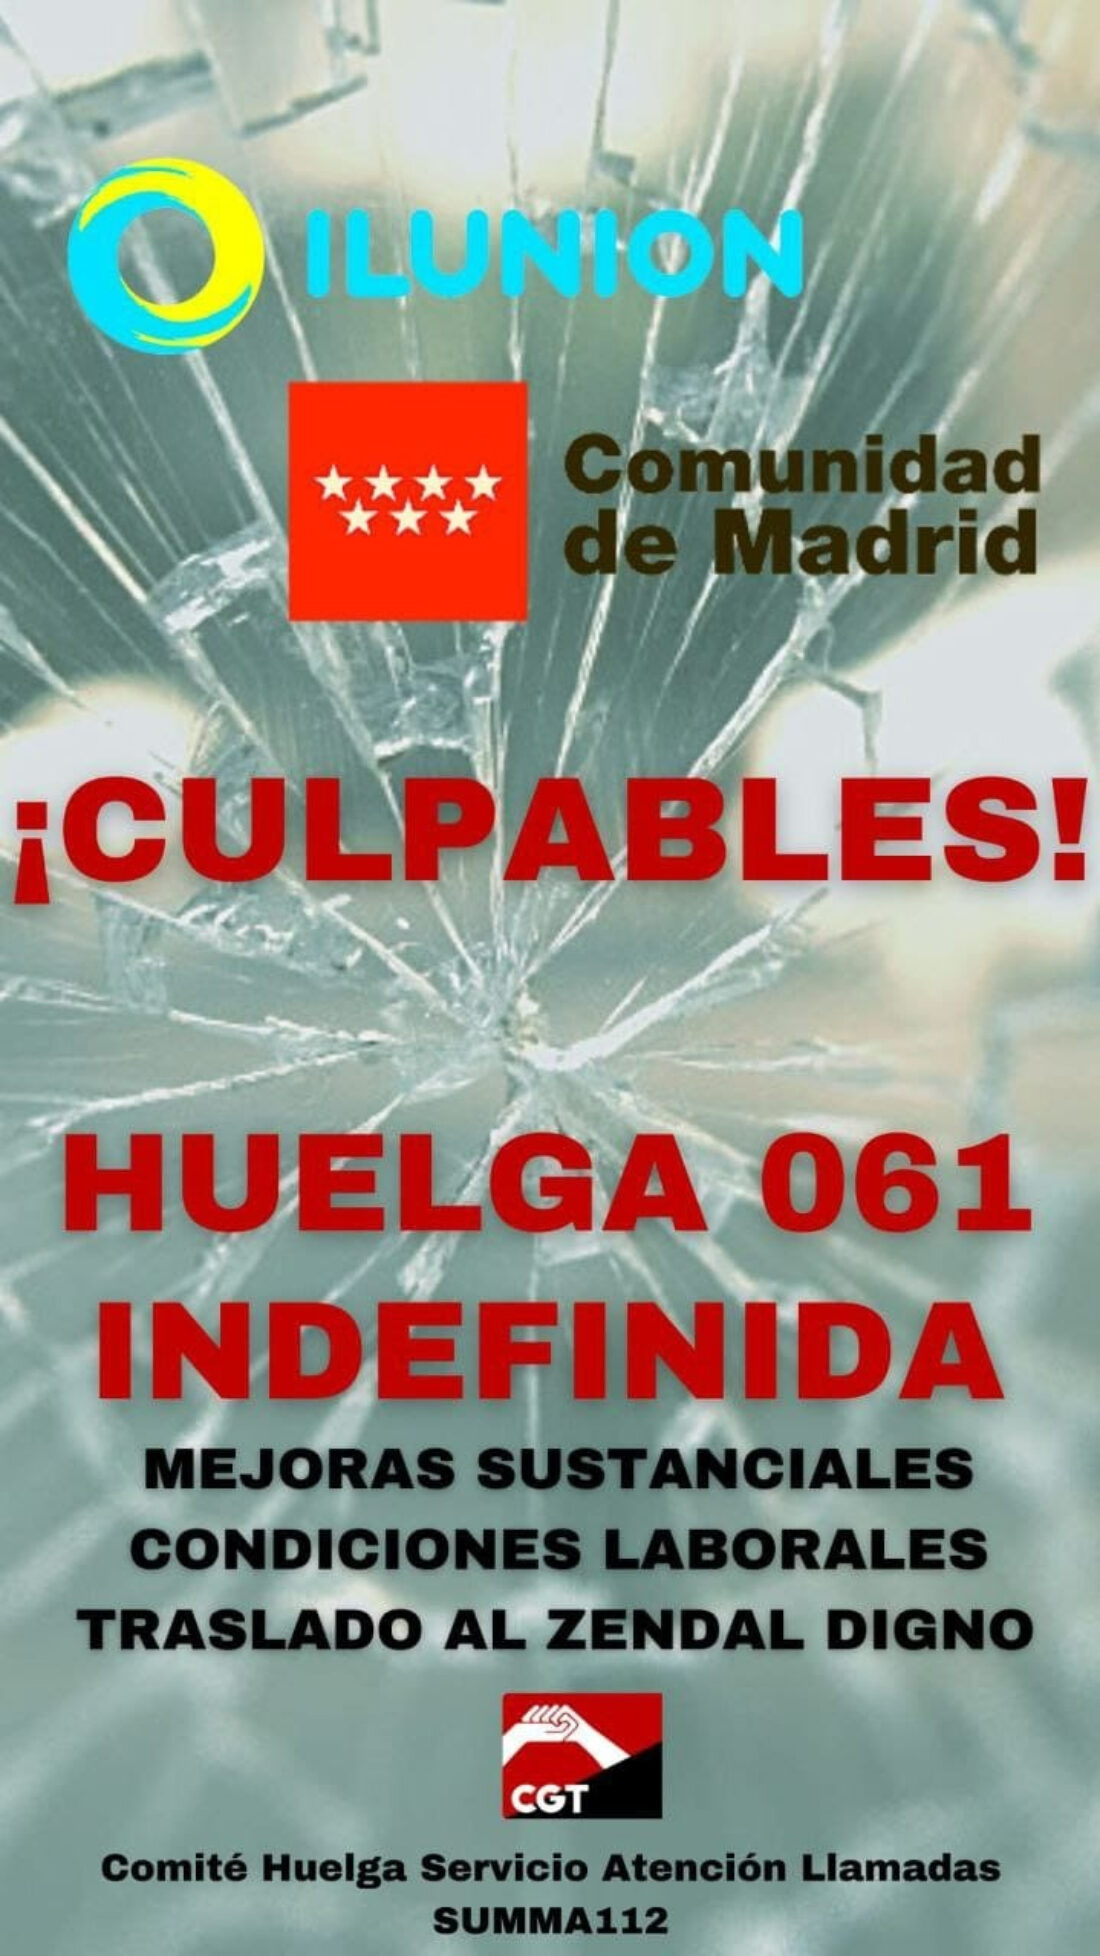 La huelga del 061 de Madrid continúa. Plantilla altamente feminizada y a la espera del incremento del presupuesto